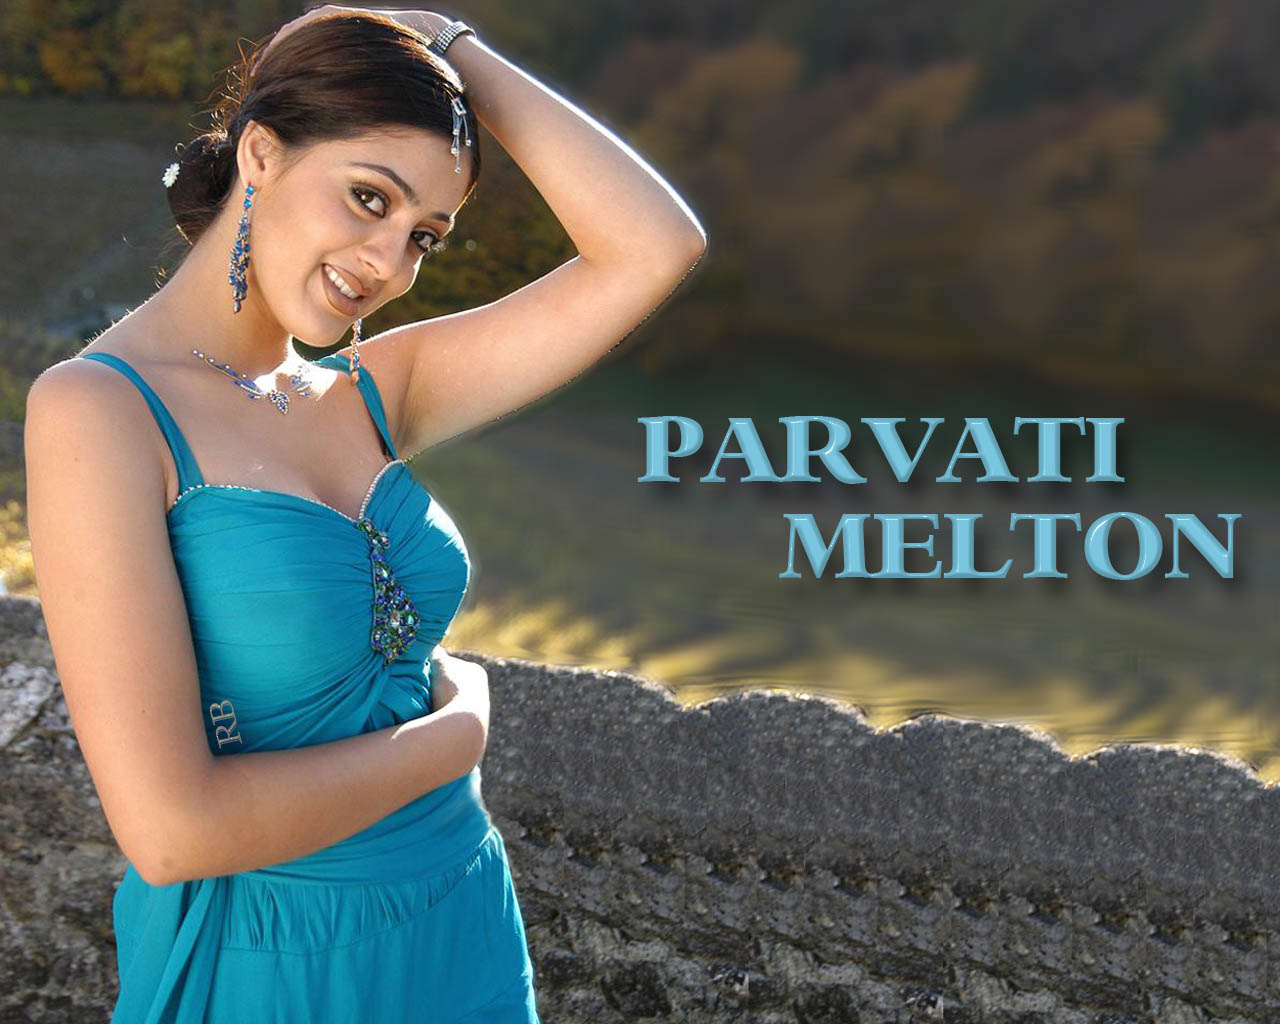 Parvati Melton Wallpapers